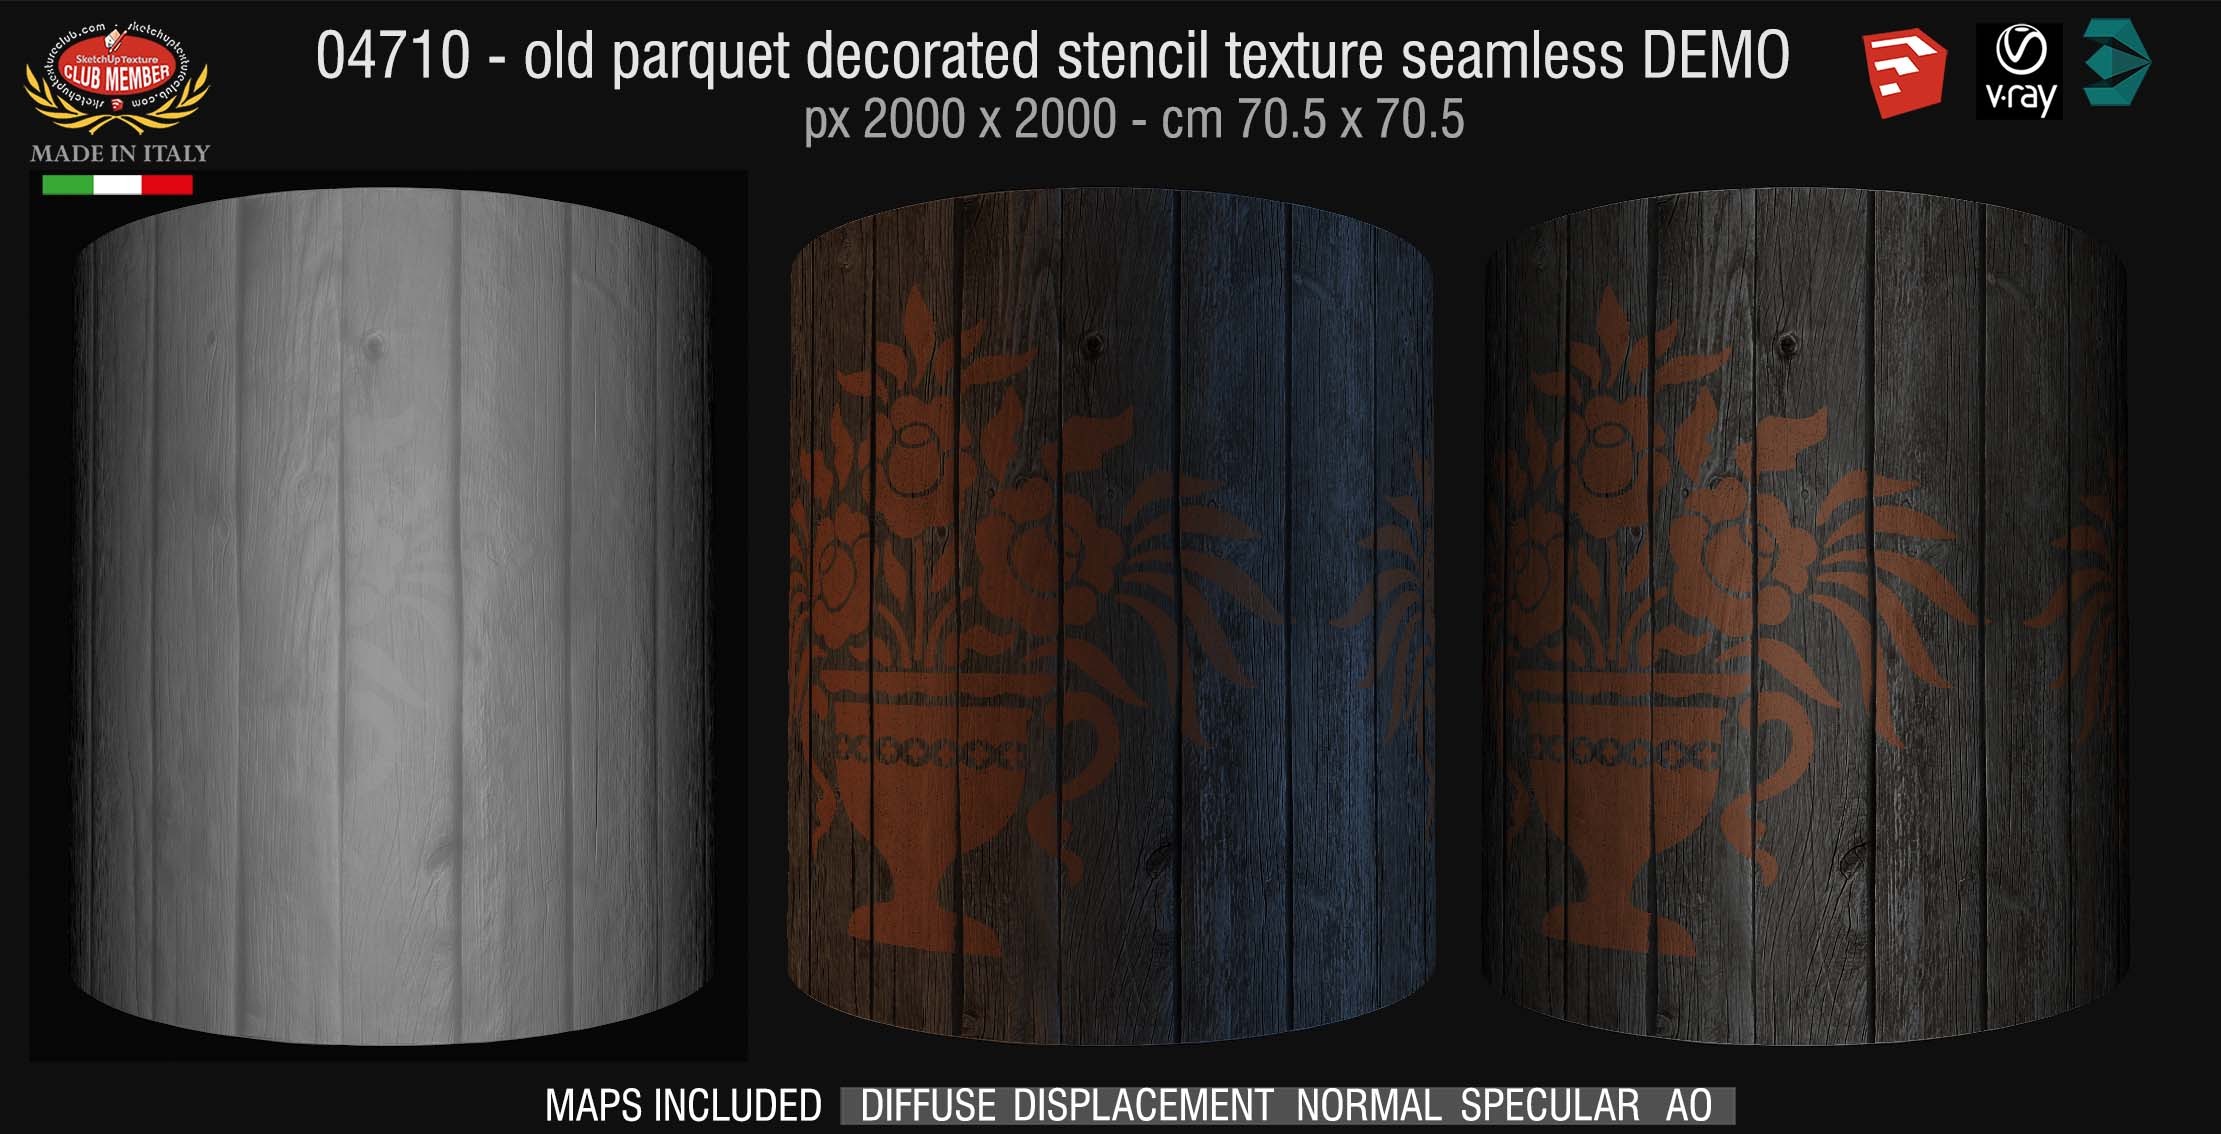 04710 HR Parquet decorated stencil texture seamless + maps DEMO